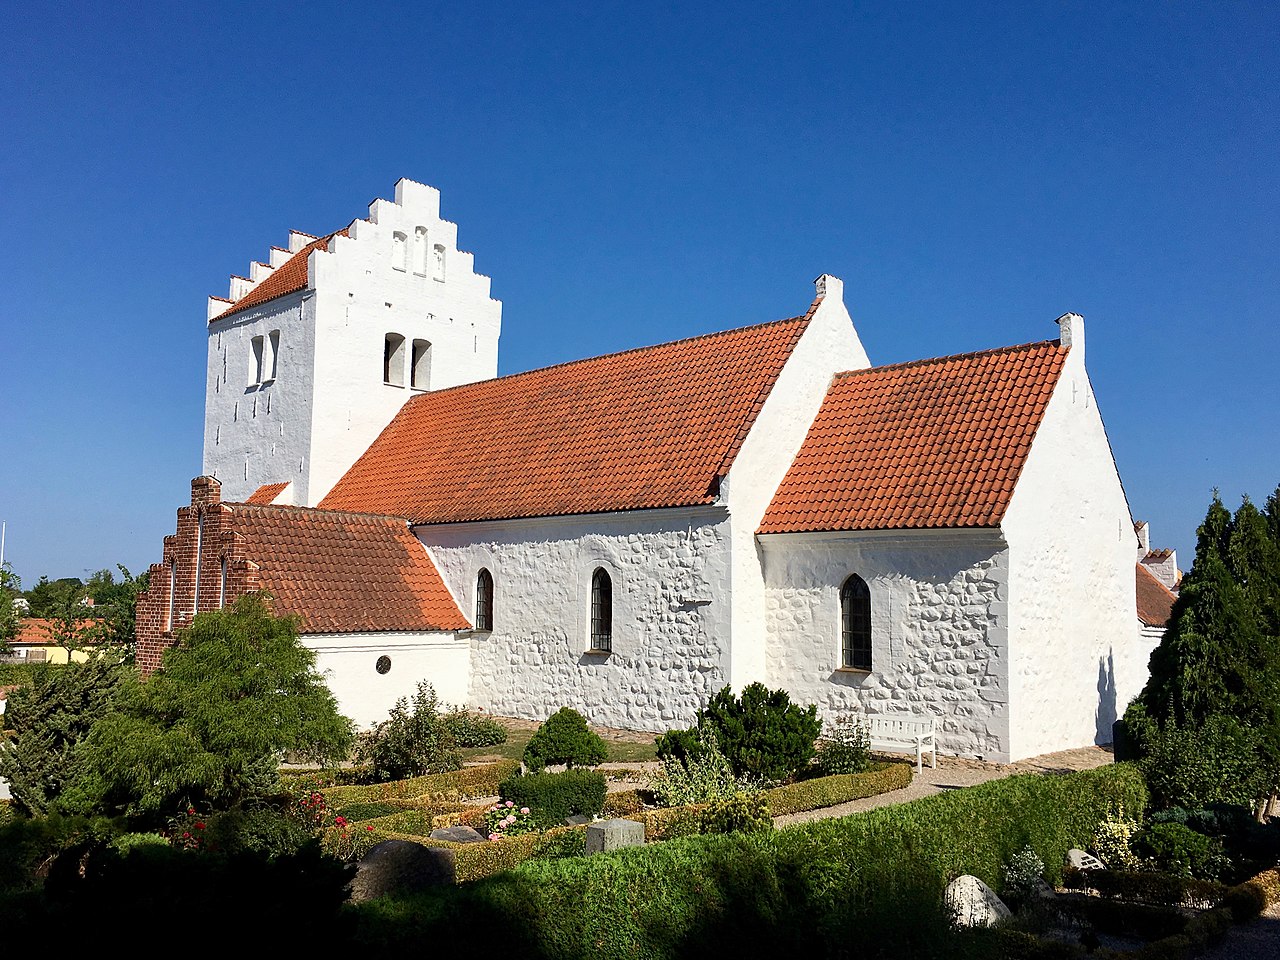 Orø Kirke